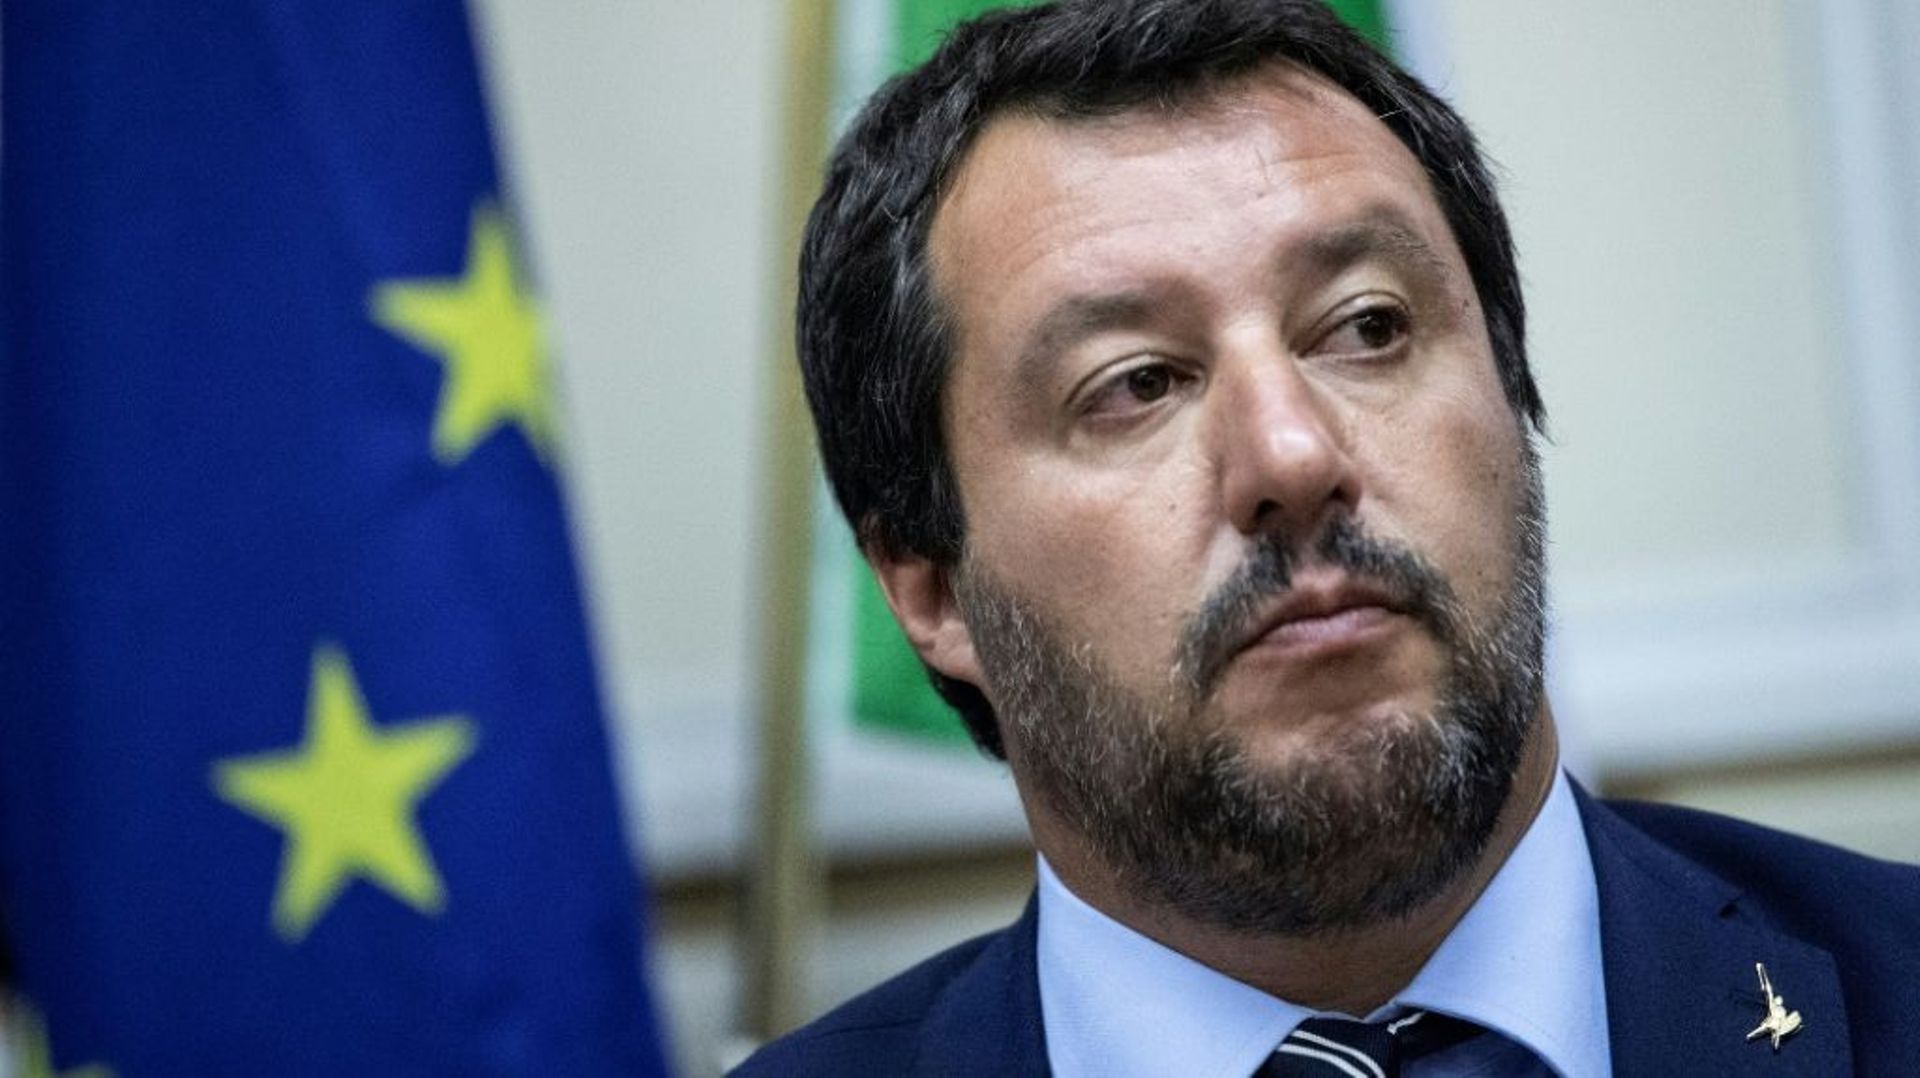 sous-enquete-pour-sequestration-de-migrants-salvini-contre-attaque